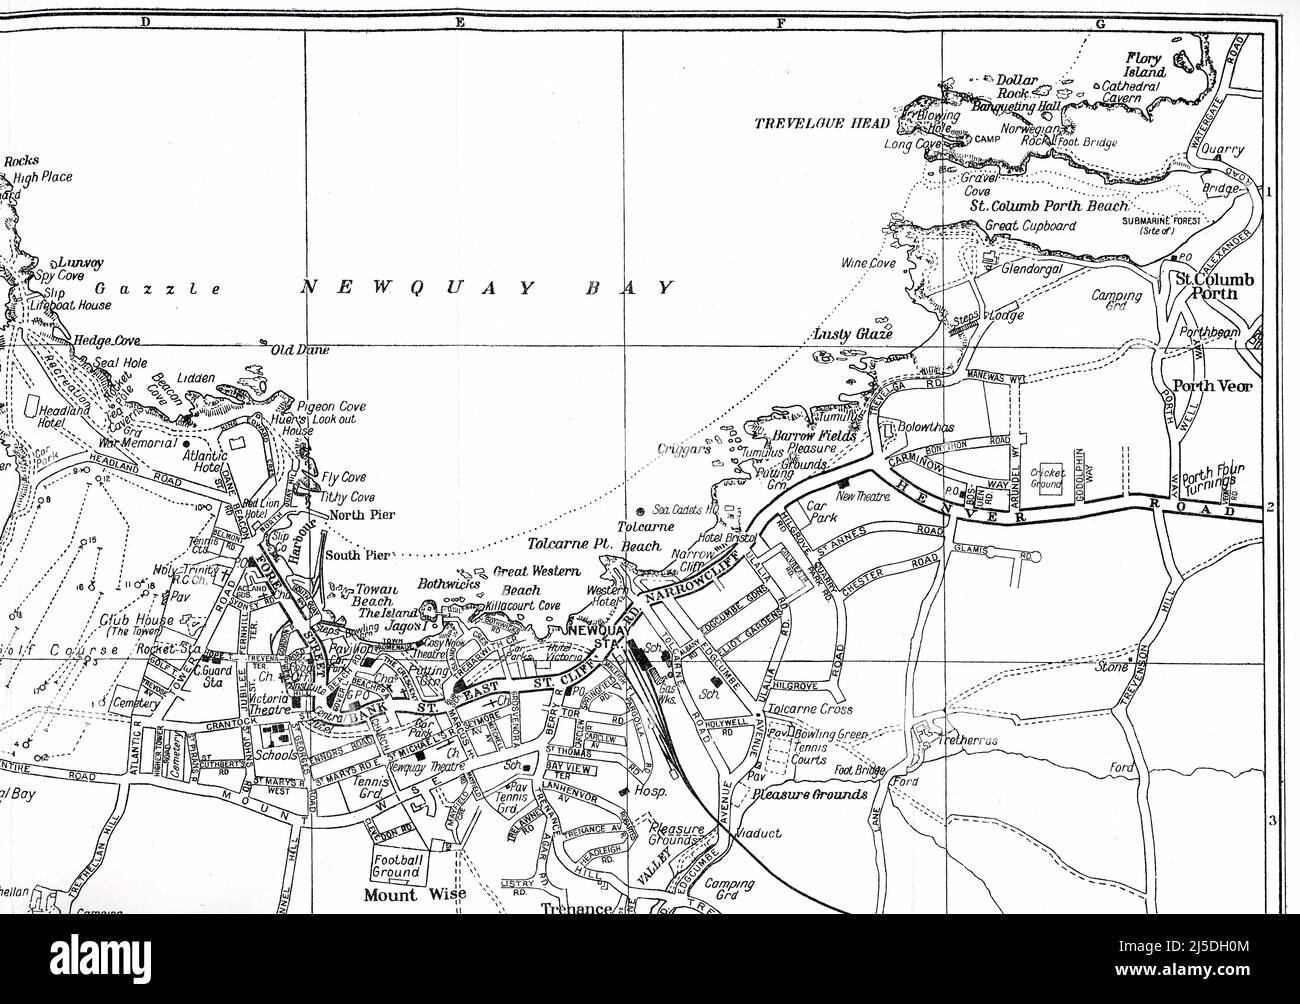 21-VE1431 carte intérieure - Plan des rues des visiteurs de la ville de Newquay, publié par Geographia Ltd. 167 Fleet Street, Londres, - vers 1945, 1946 Banque D'Images